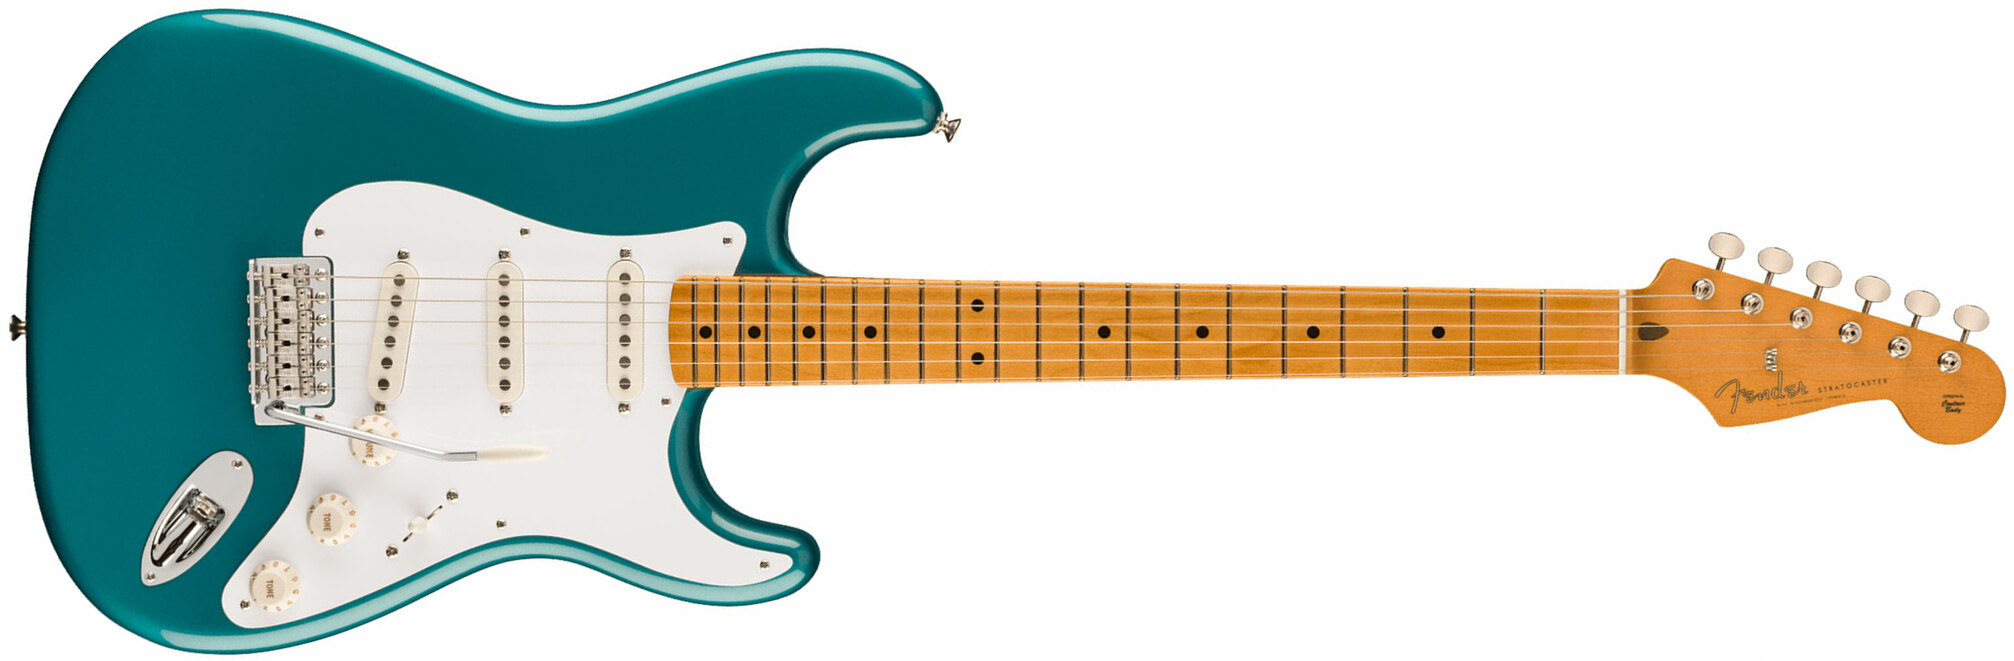 Fender Strat 50s Vintera 2 Mex 3s Trem Mn - Ocean Turquoise - Guitare Électrique Forme Str - Main picture